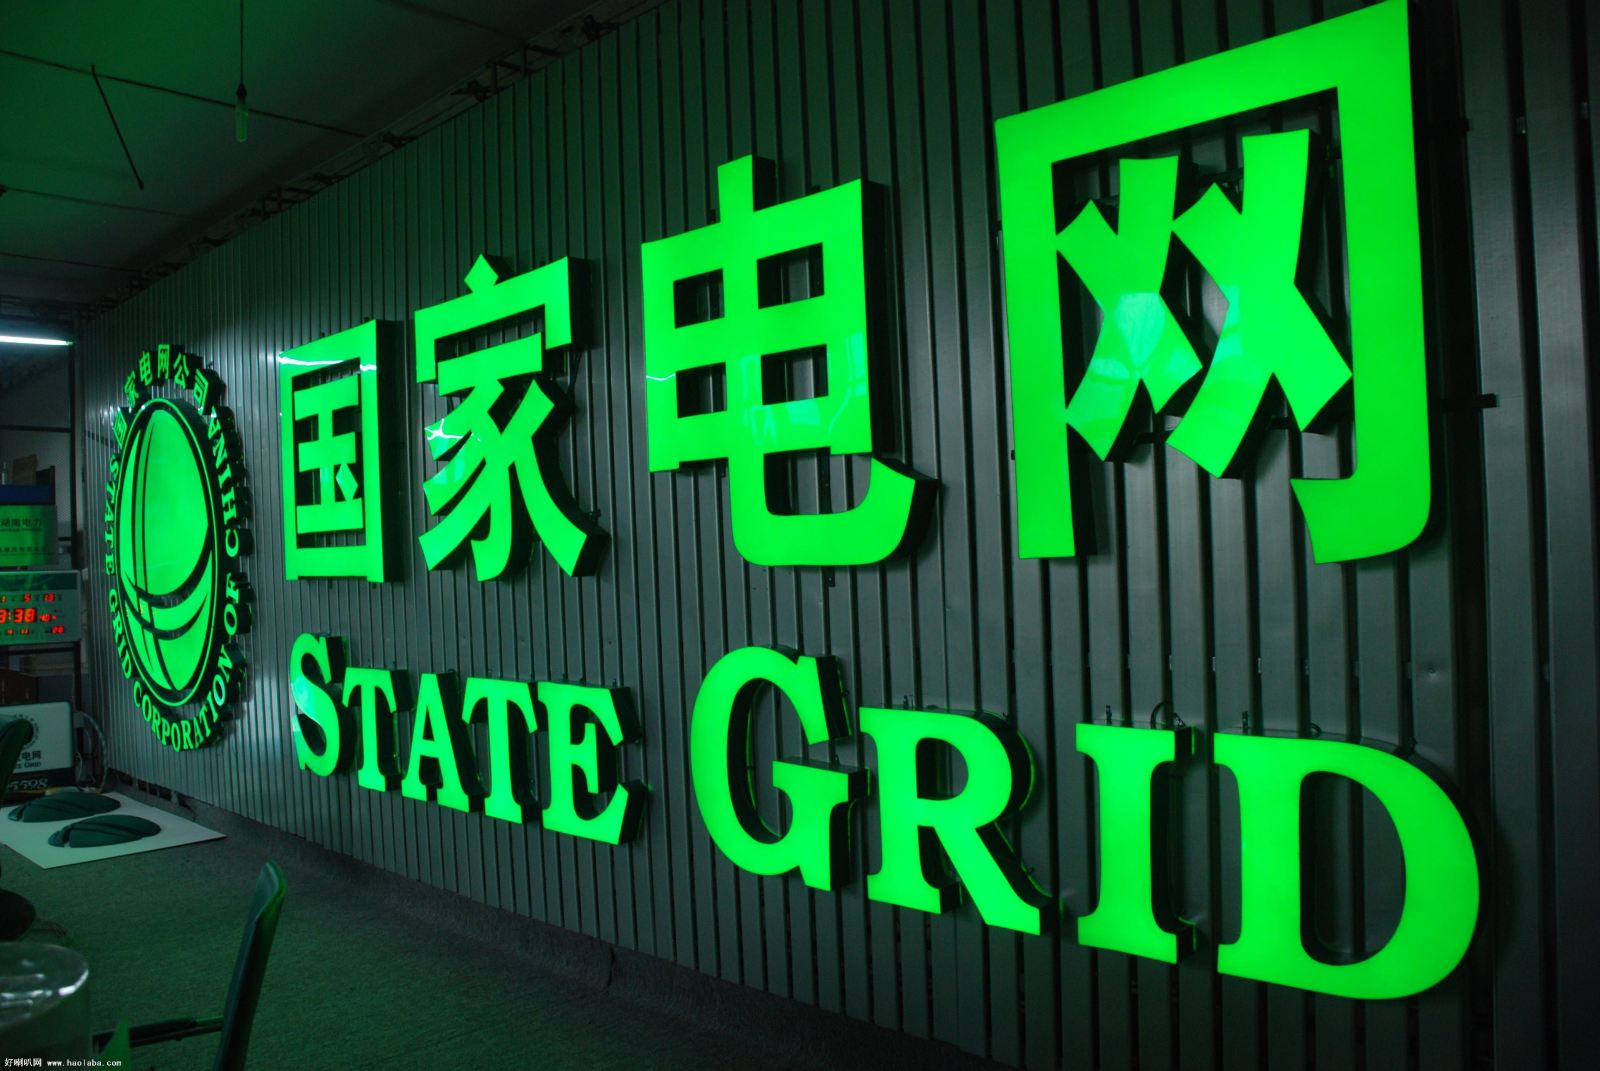 Μεγάλο deal στην ενέργεια: Η κινεζική State Grid αγοράζει το 55% της CPFL Energia